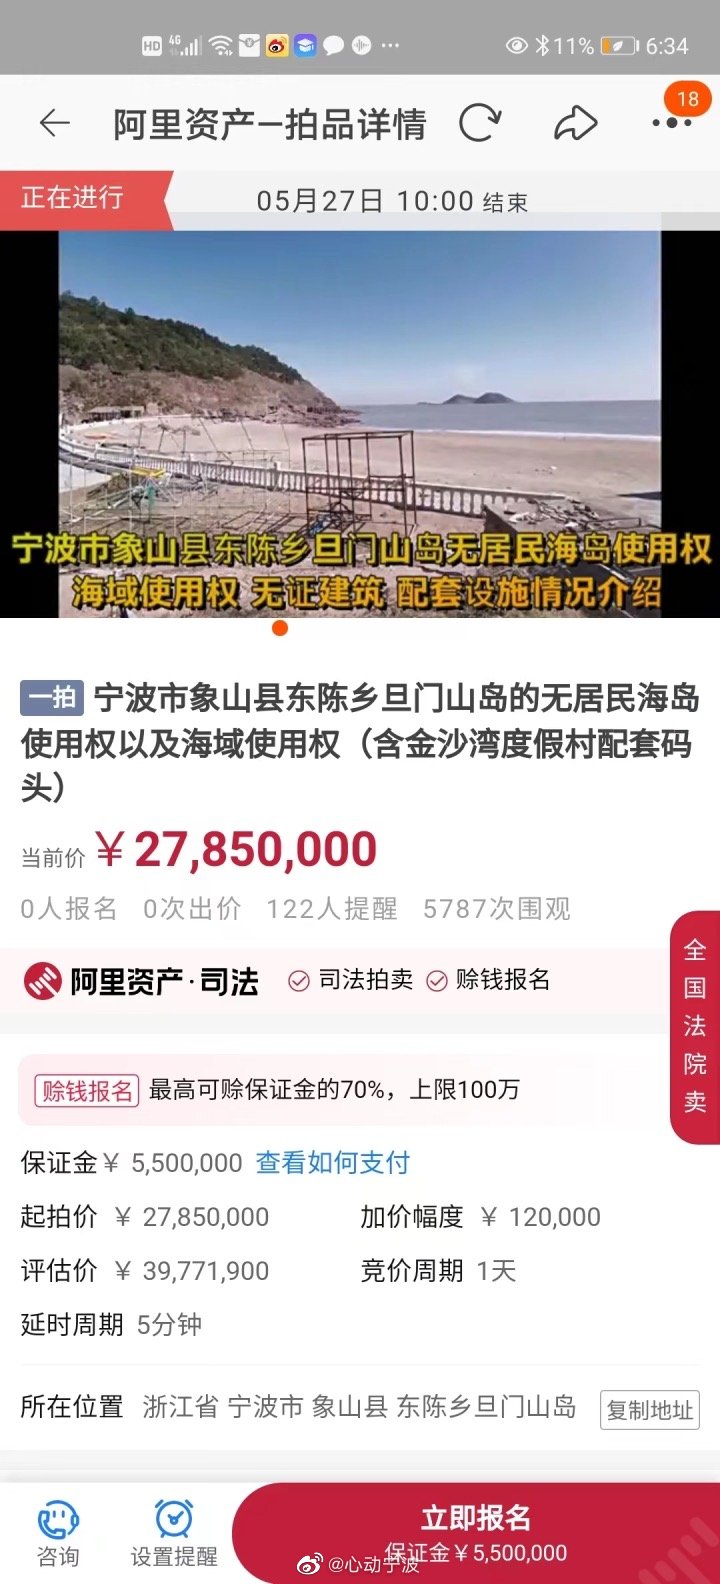 浙江一无人岛挂牌拍卖：起拍价2785万元 约6000人次围观